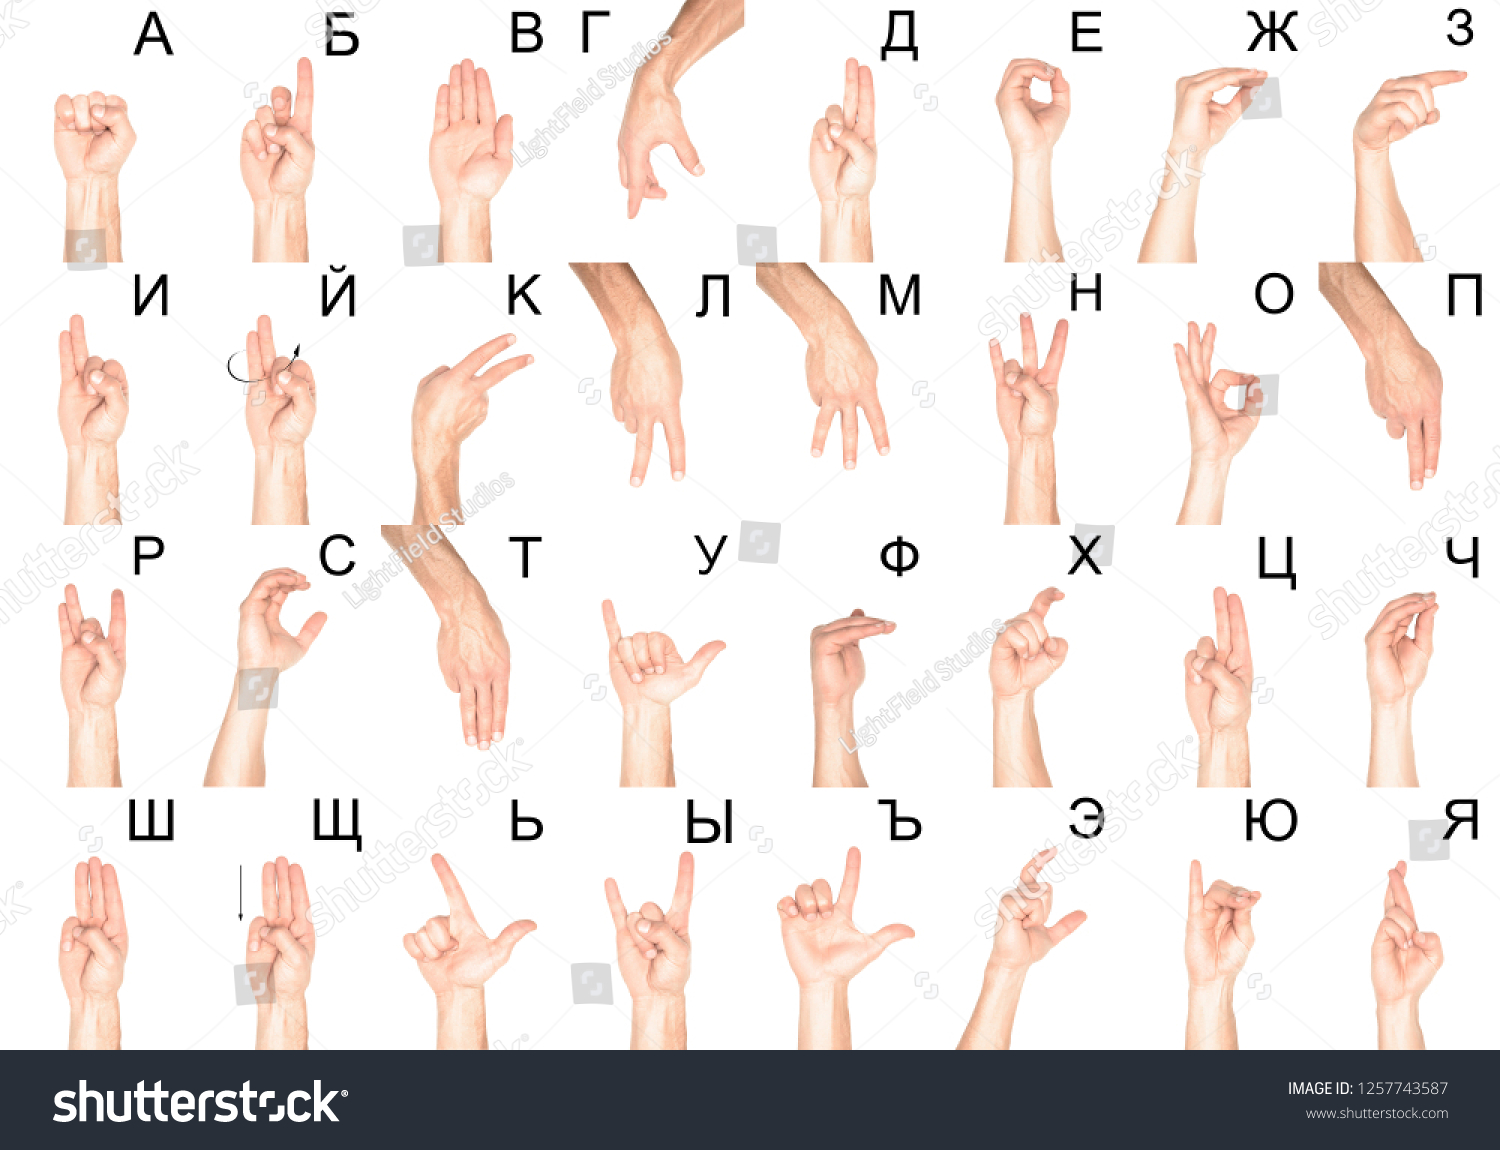 Азбука жестами рук